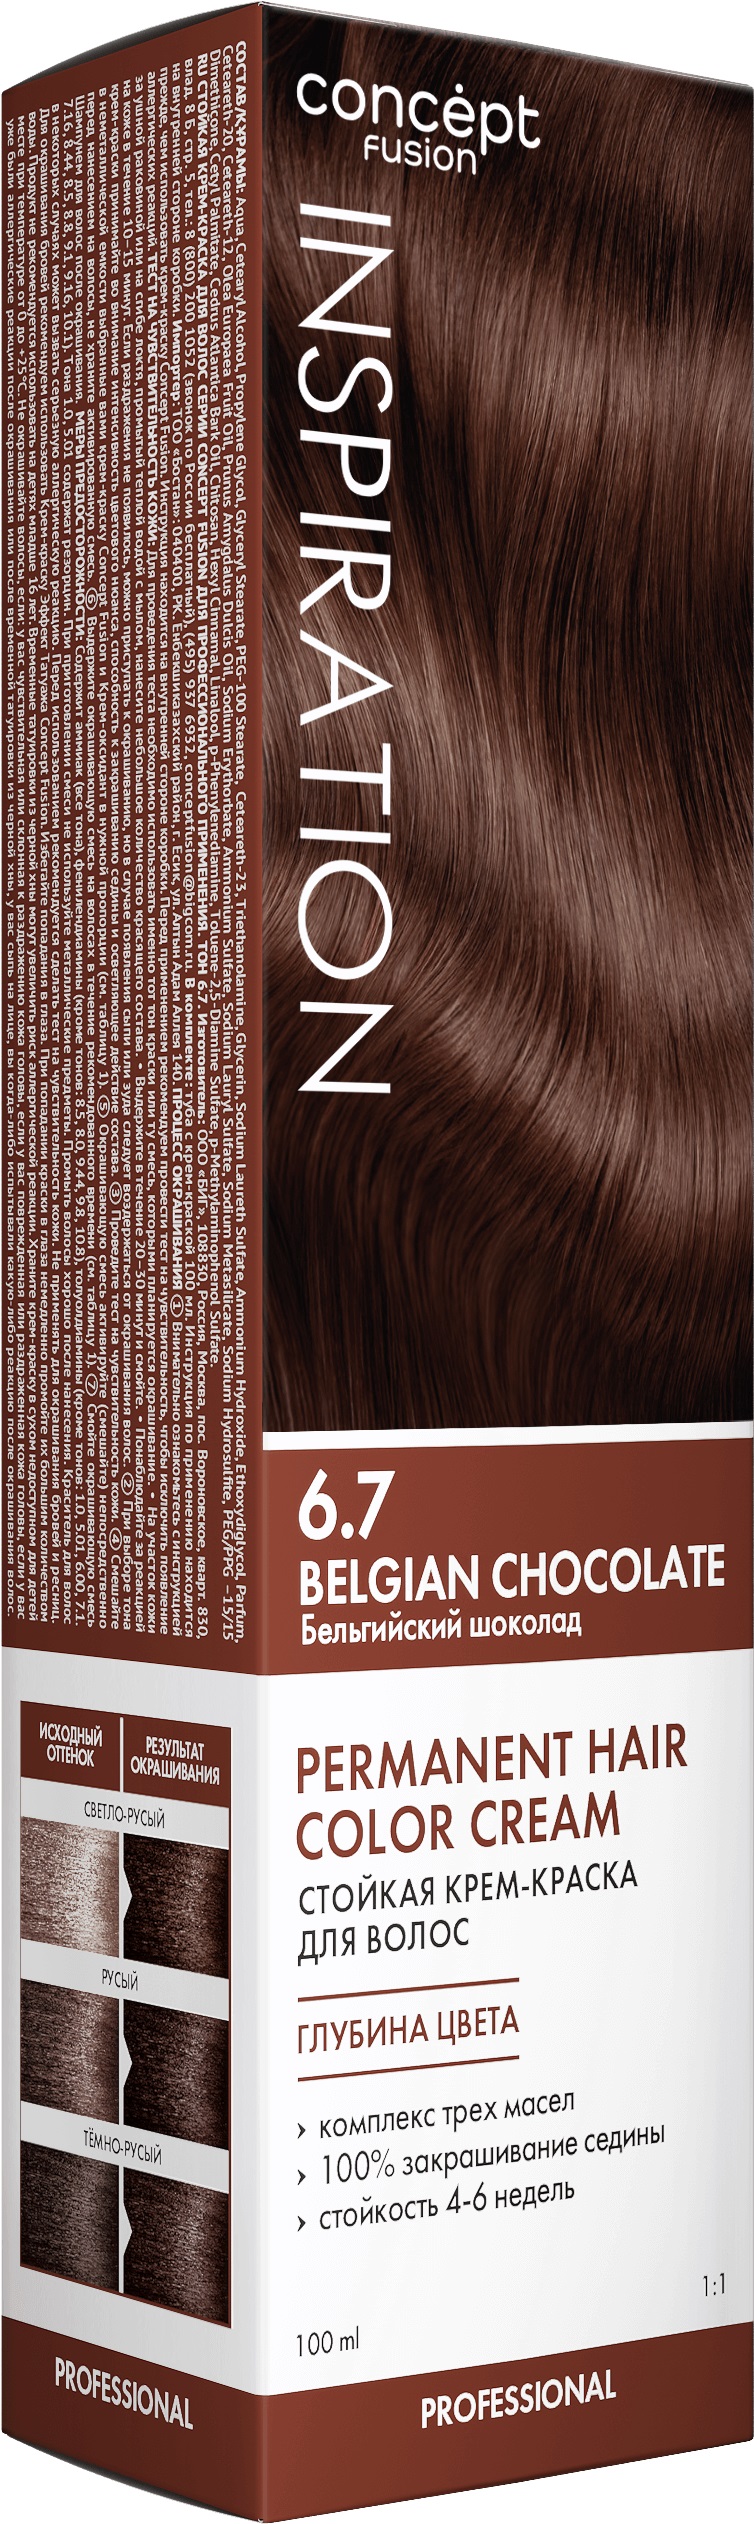 Крем-краска Concept Fusion Inspiration бельгийский шоколад, №6.7, 100 мл шампунь replenish authentic beauty concept